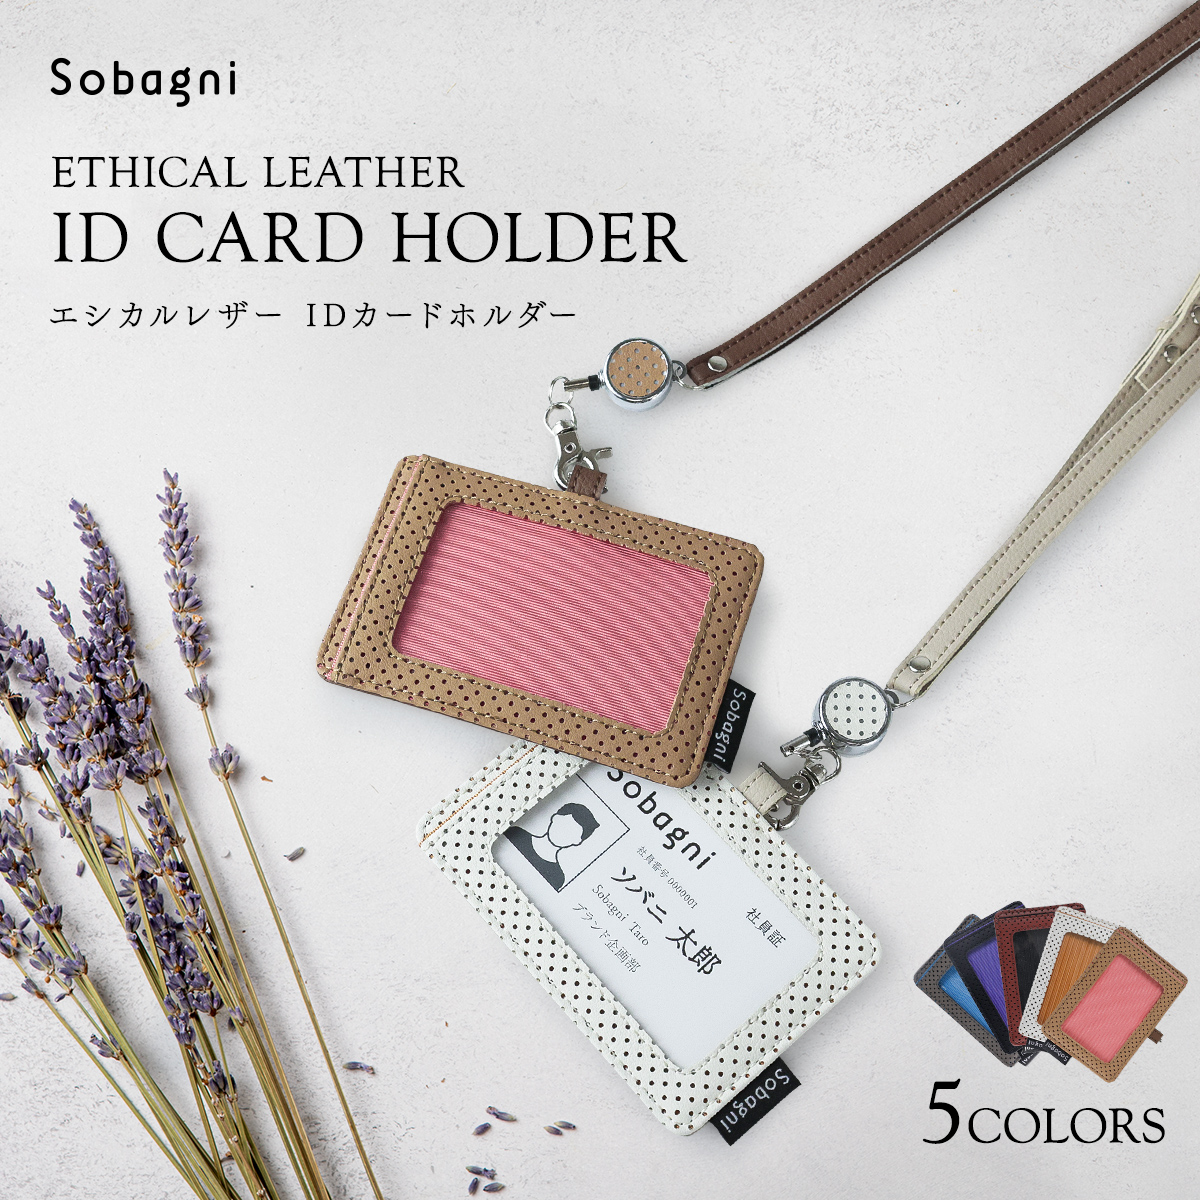 ソバニ公式 IDカードケース ネームホルダー 横型 icカード 社員証 IDケース IDカードホルダー 大人 おしゃれ かっこいい リール プレゼント  パンチング メンズ レディース